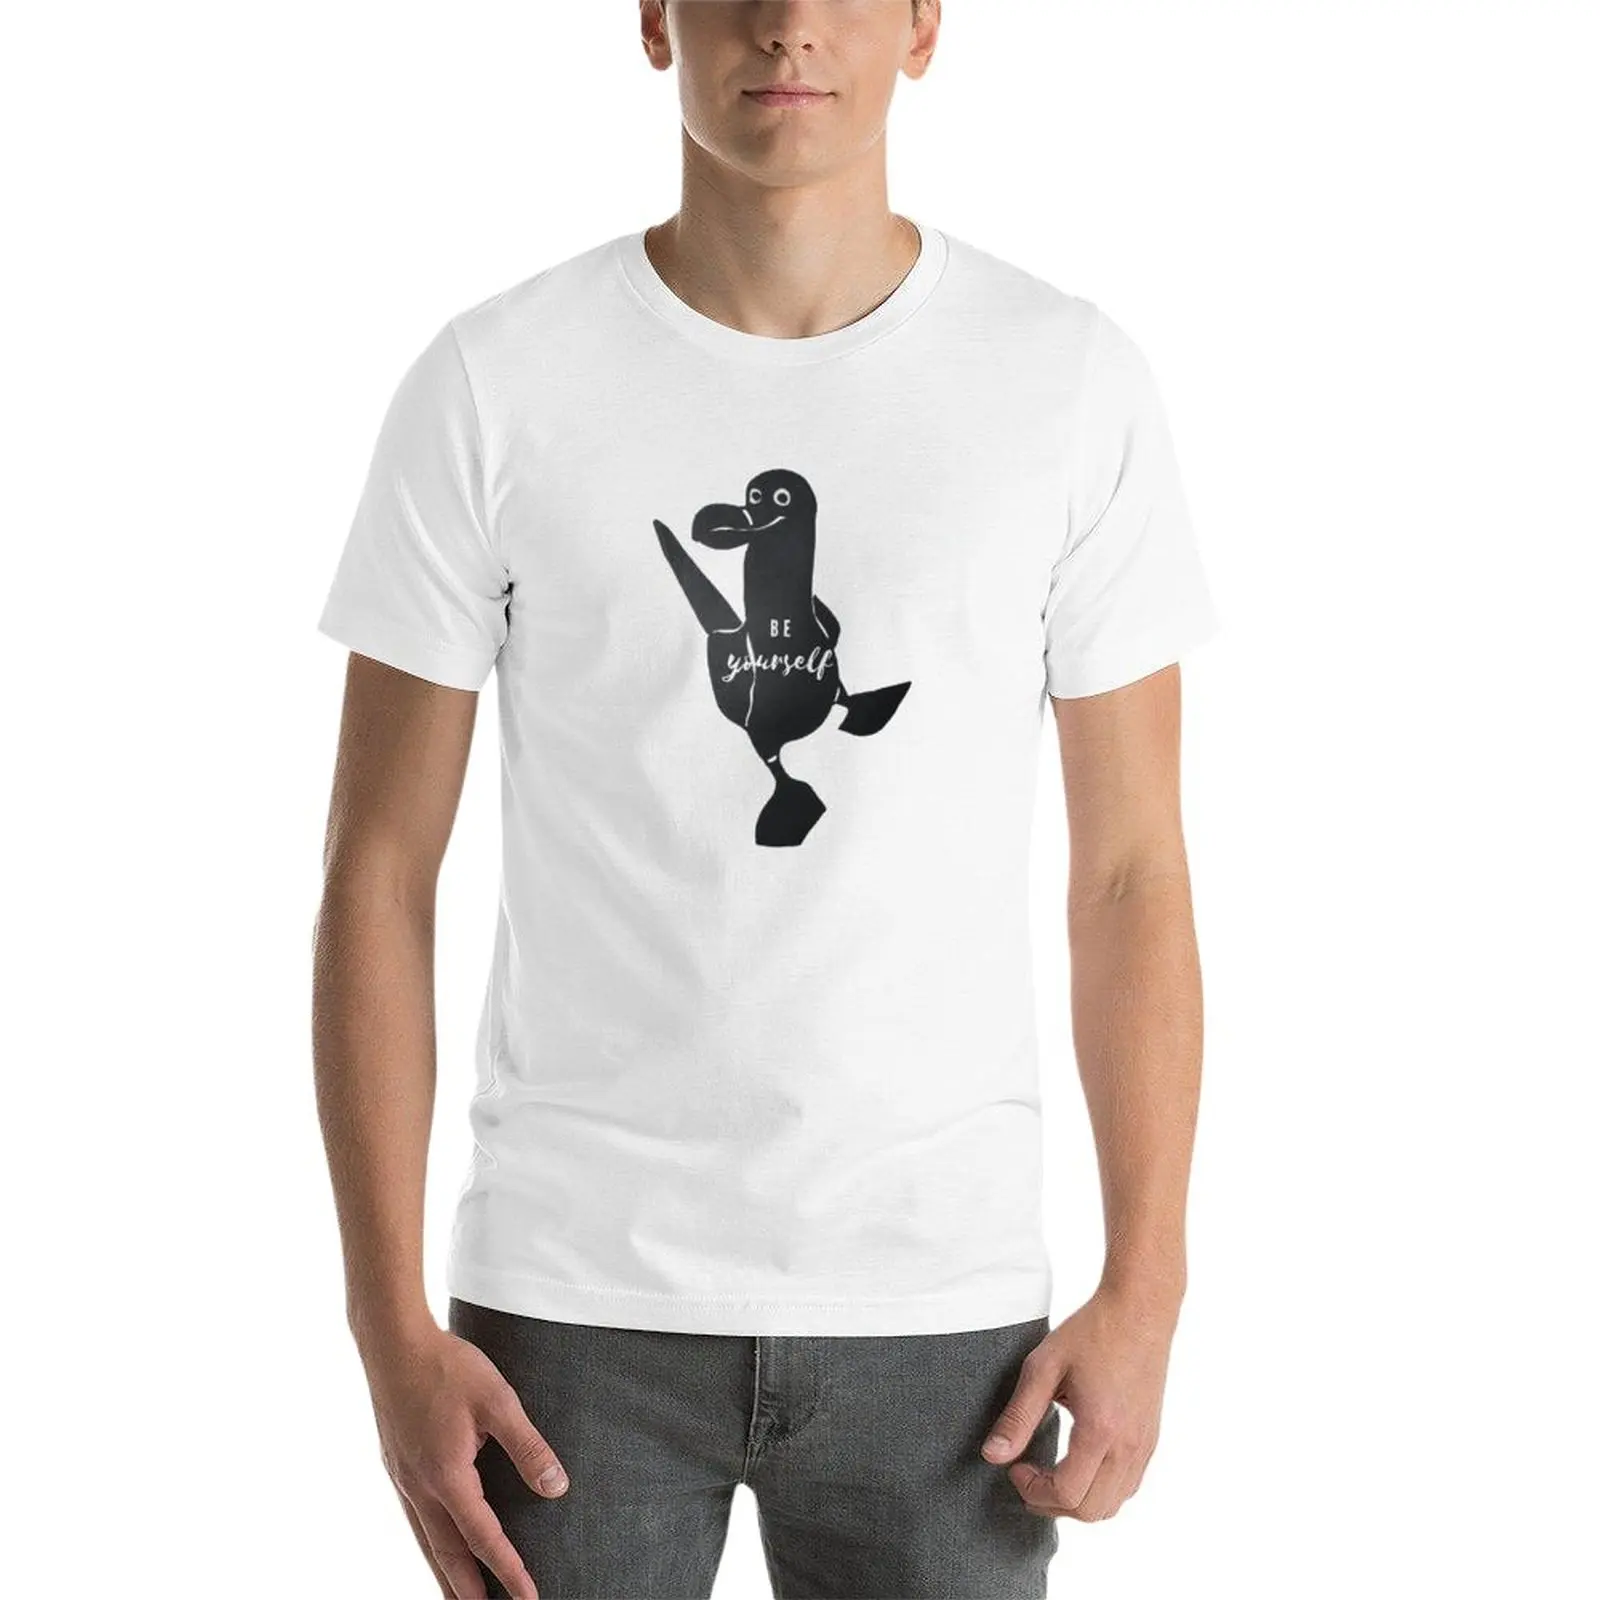 Новая футболка Be Yourself с синей лапкой Booby Bird от Christie Olstad с трафаретным принтом, летний топ, забавные футболки для мужчин Изображение 2